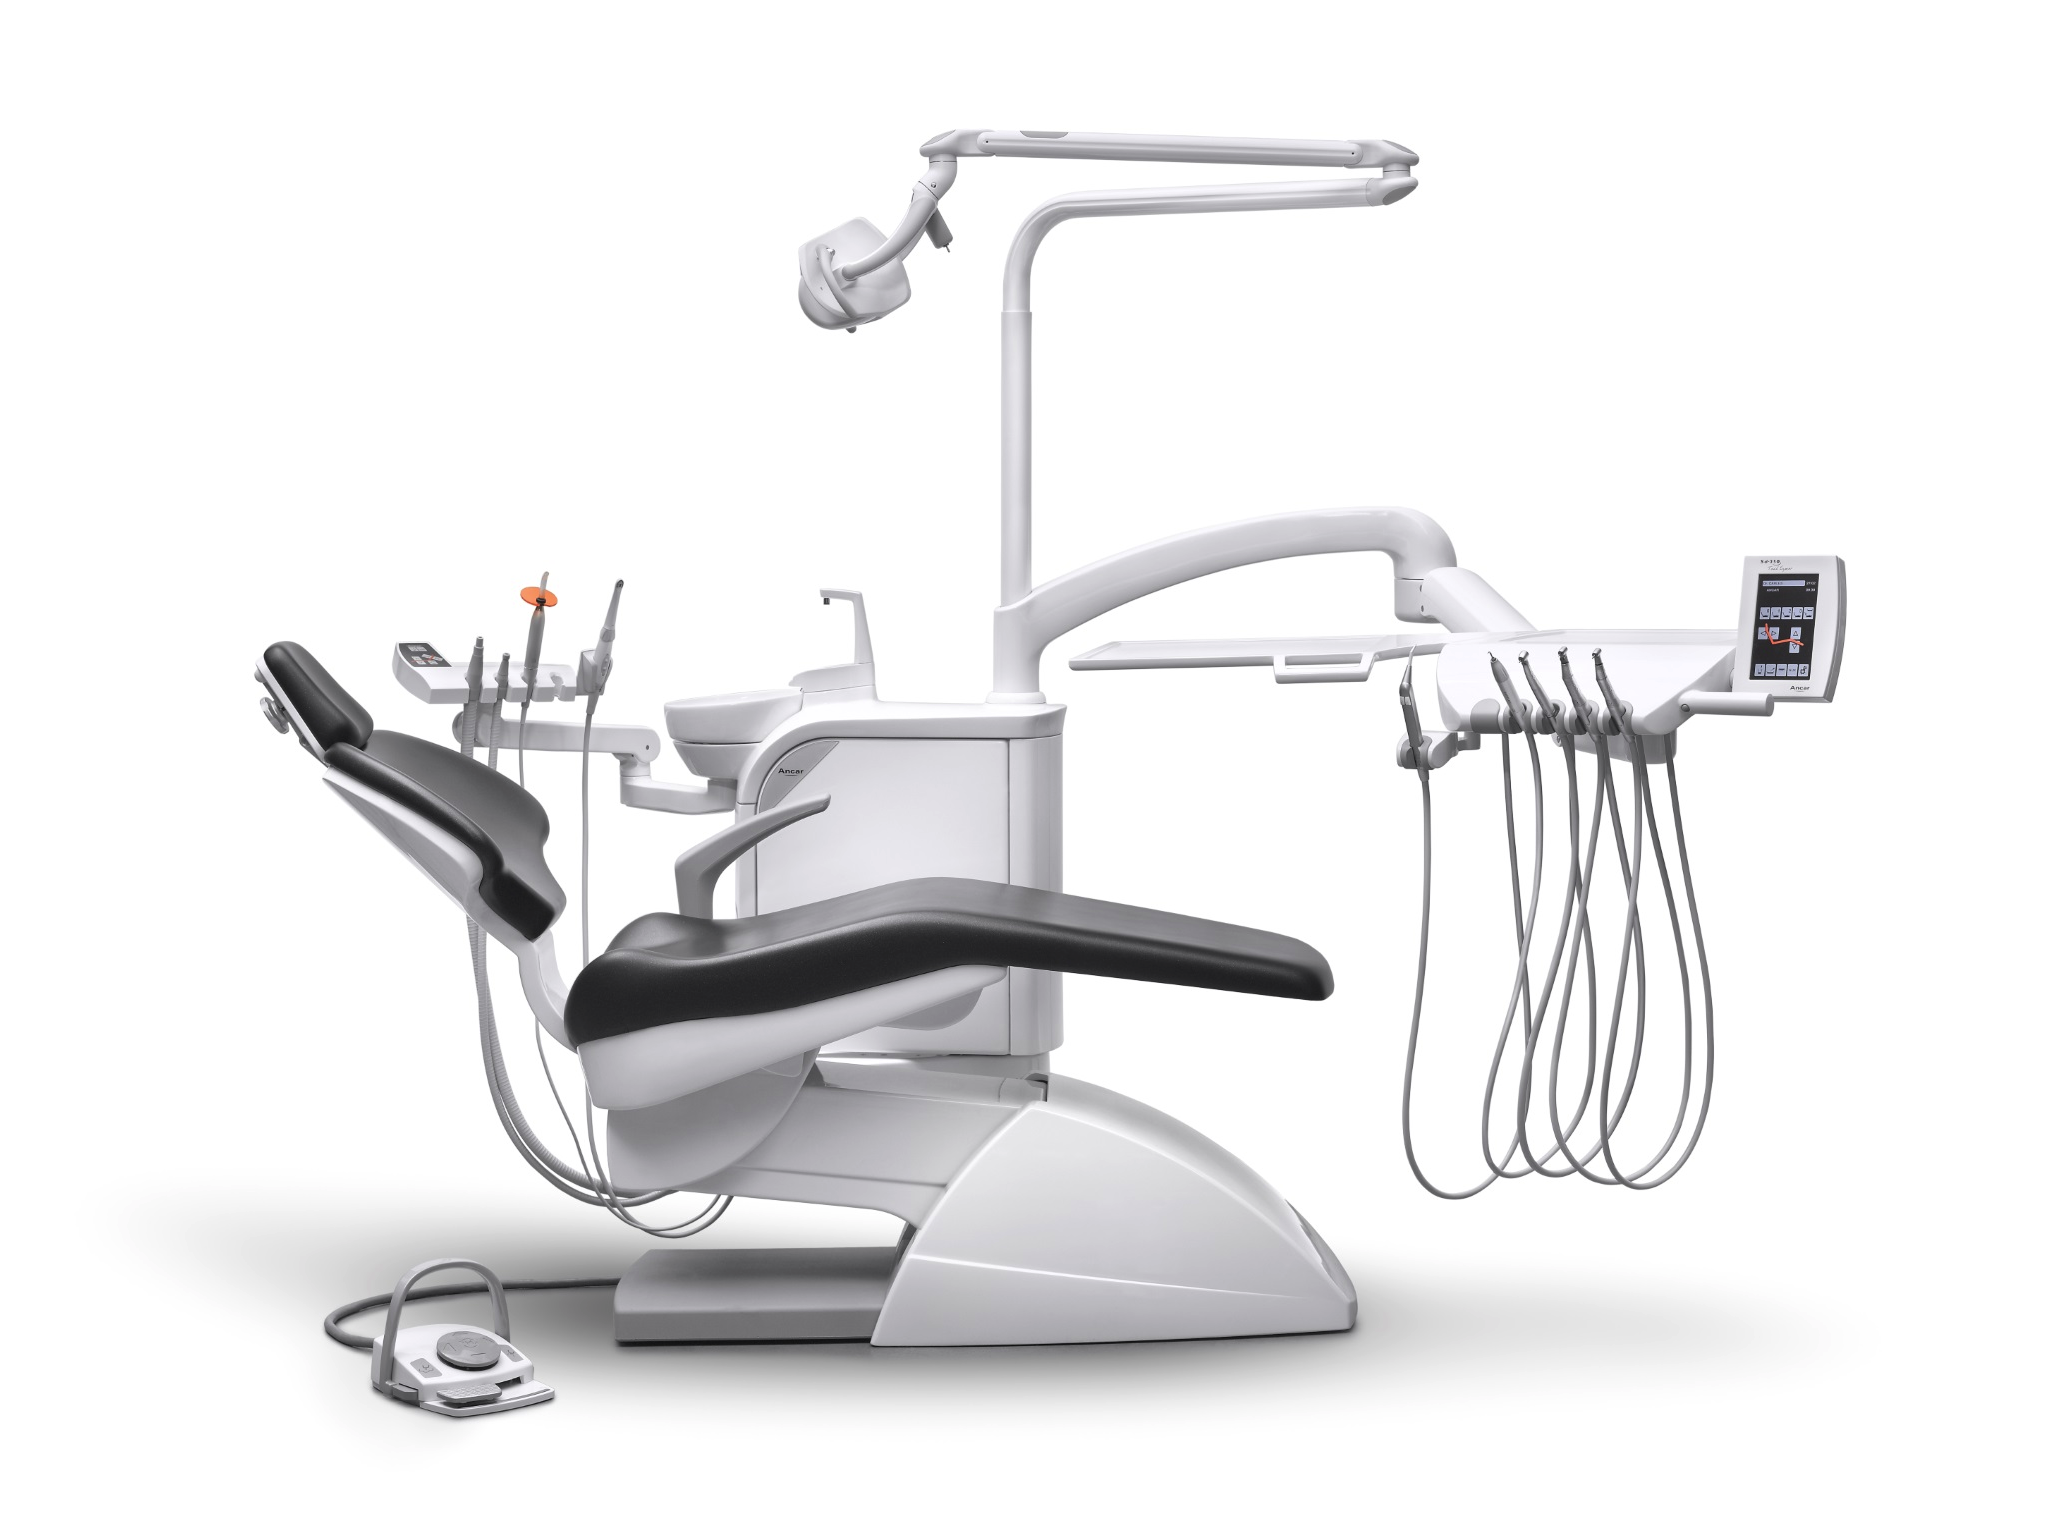 Bild der Ambident GmbH - Dental Geräte Handel und Service